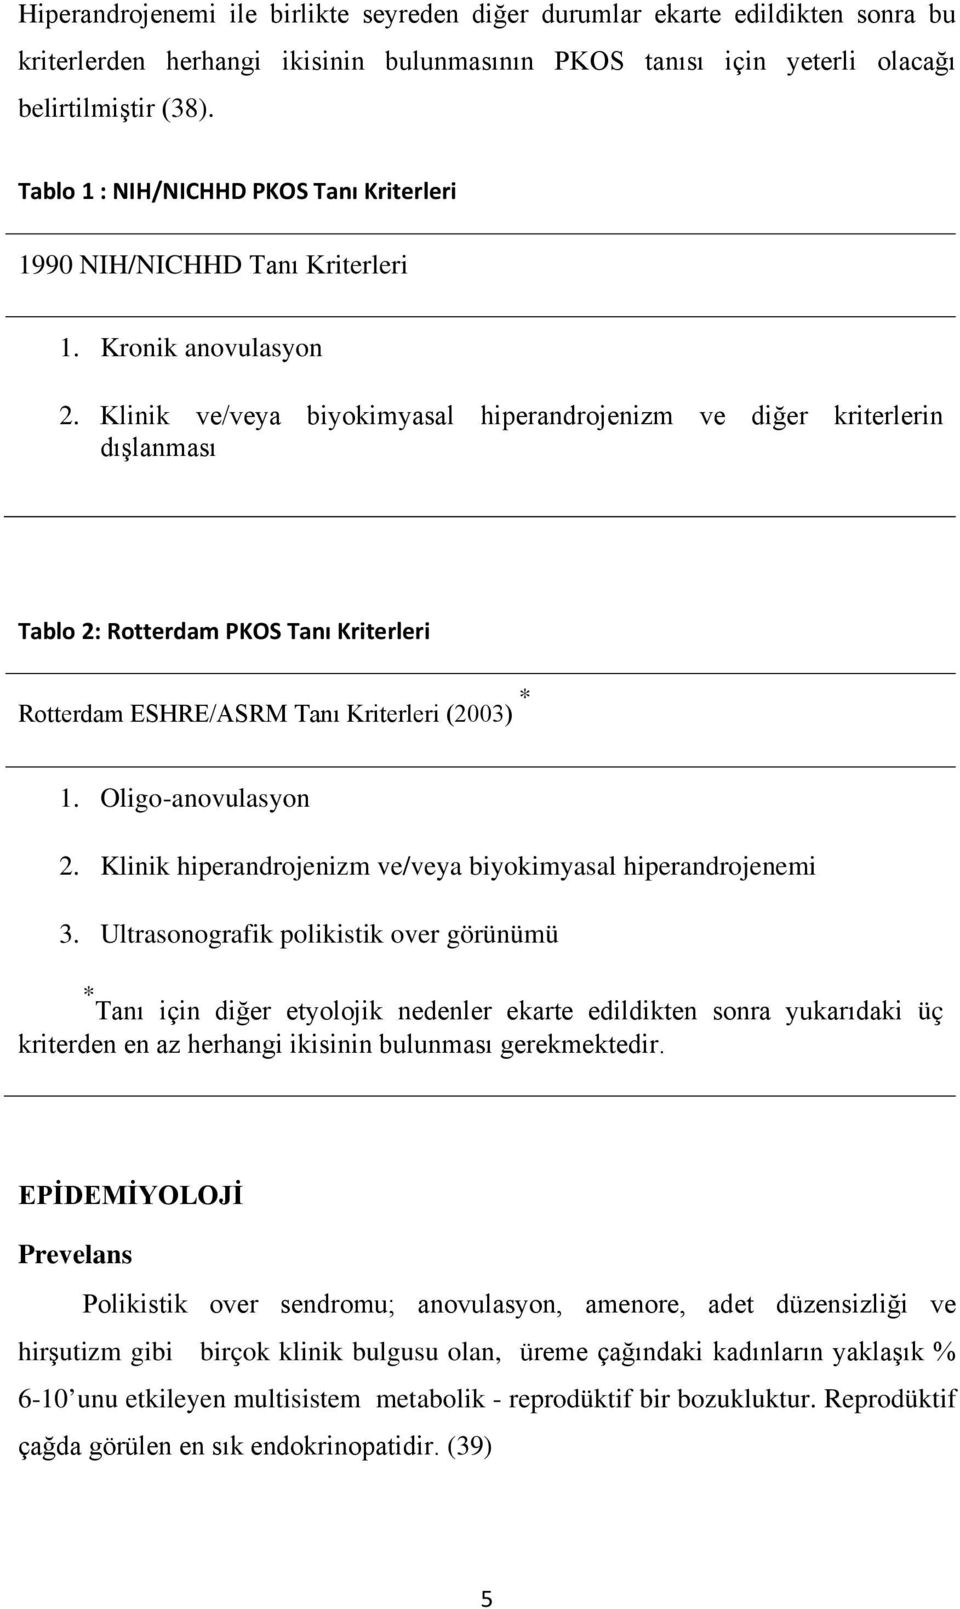 Klinik ve/veya biyokimyasal hiperandrojenizm ve diğer kriterlerin dışlanması Tablo 2: Rotterdam PKOS Tanı Kriterleri Rotterdam ESHRE/ASRM Tanı Kriterleri (2003) * 1. Oligo-anovulasyon 2.